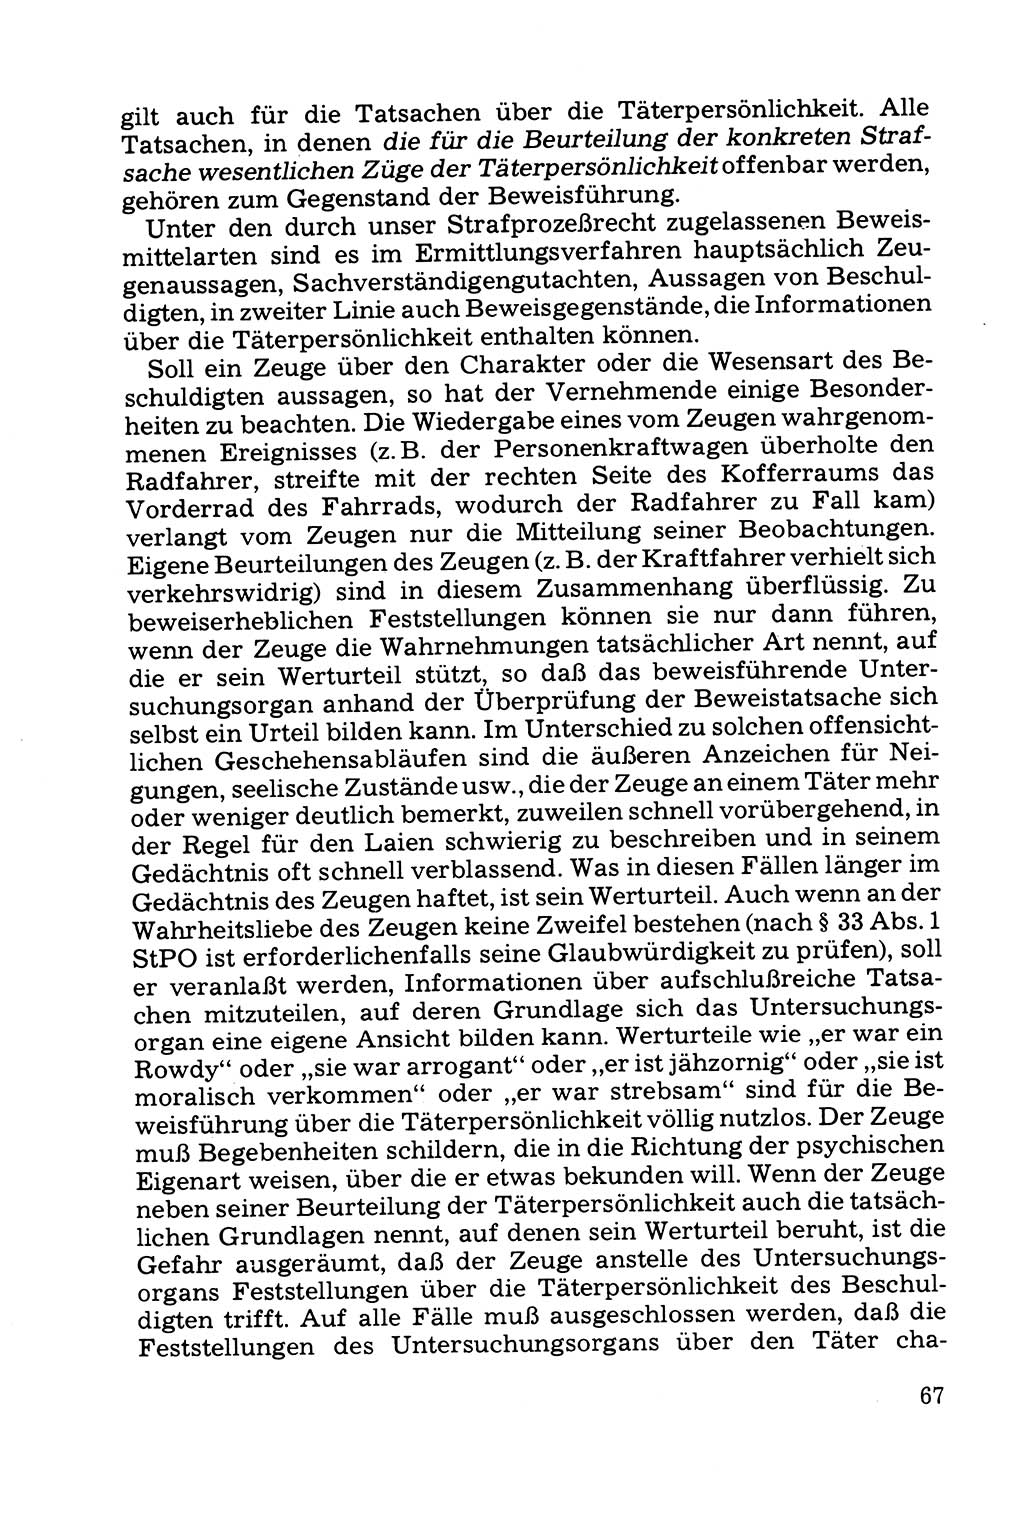 Grundfragen der Beweisführung im Ermittlungsverfahren [Deutsche Demokratische Republik (DDR)] 1980, Seite 67 (Bws.-Fhrg. EV DDR 1980, S. 67)